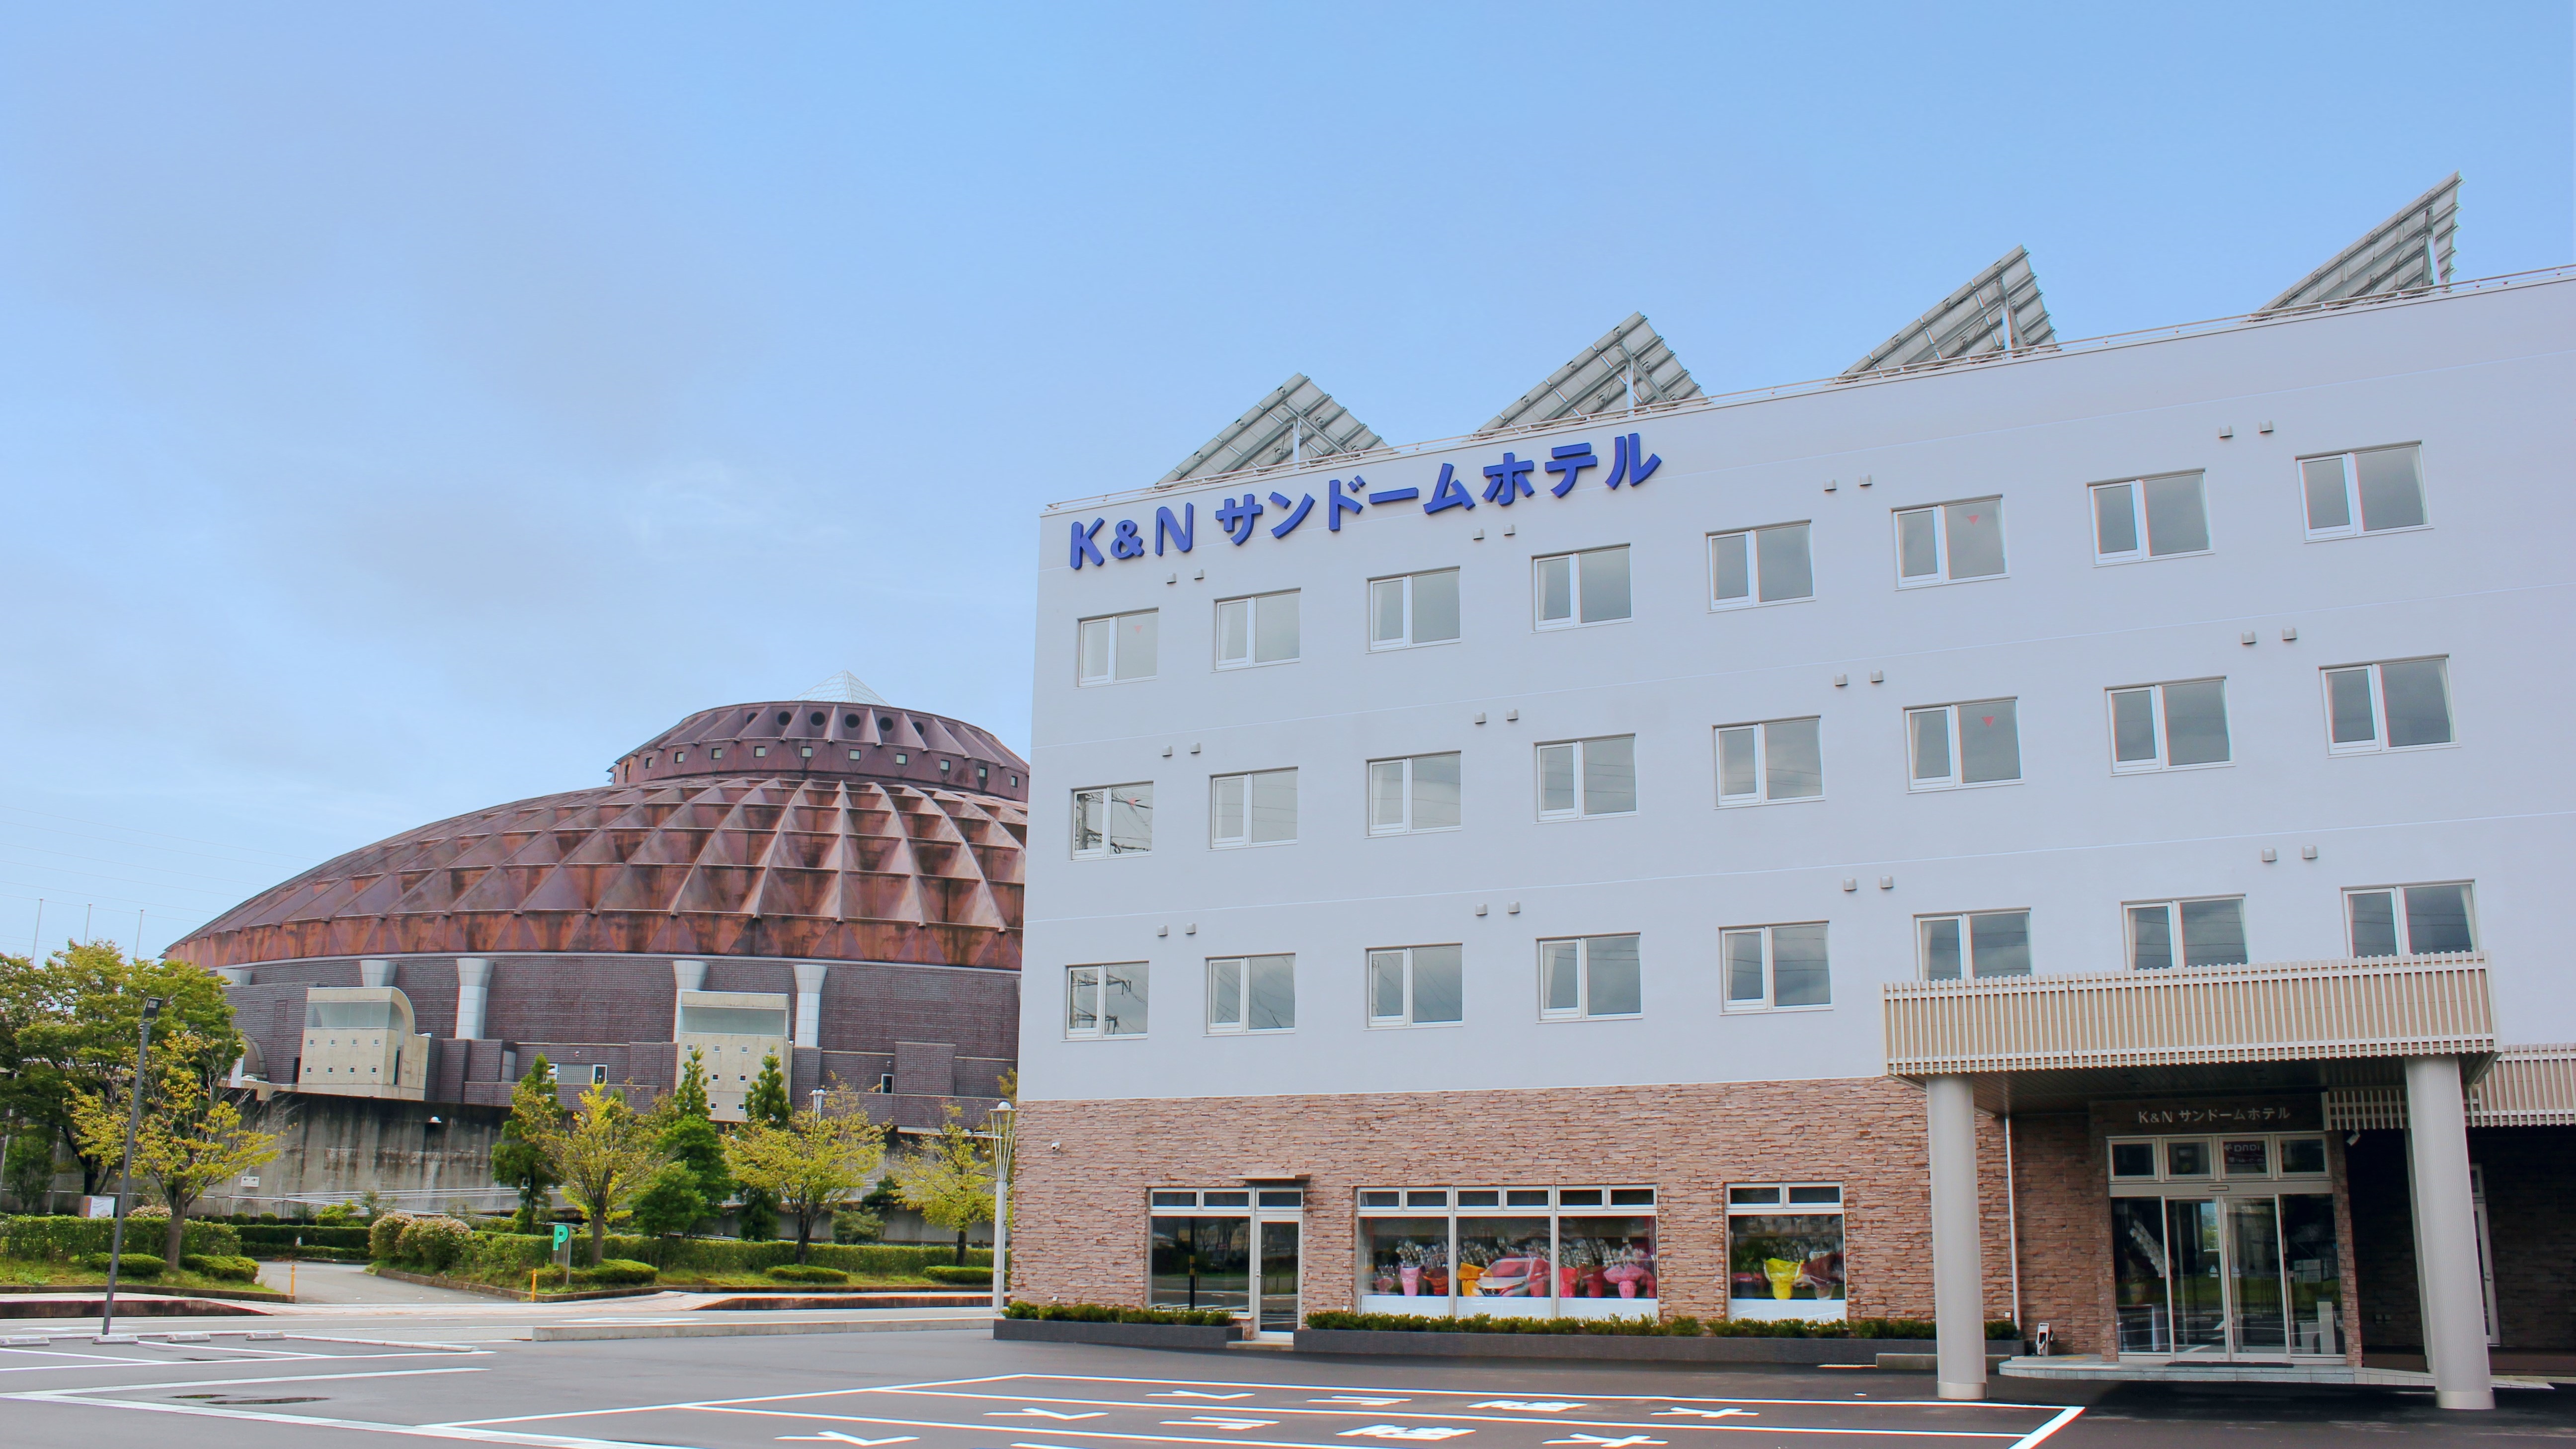 K&N 산도무 후쿠이 호텔